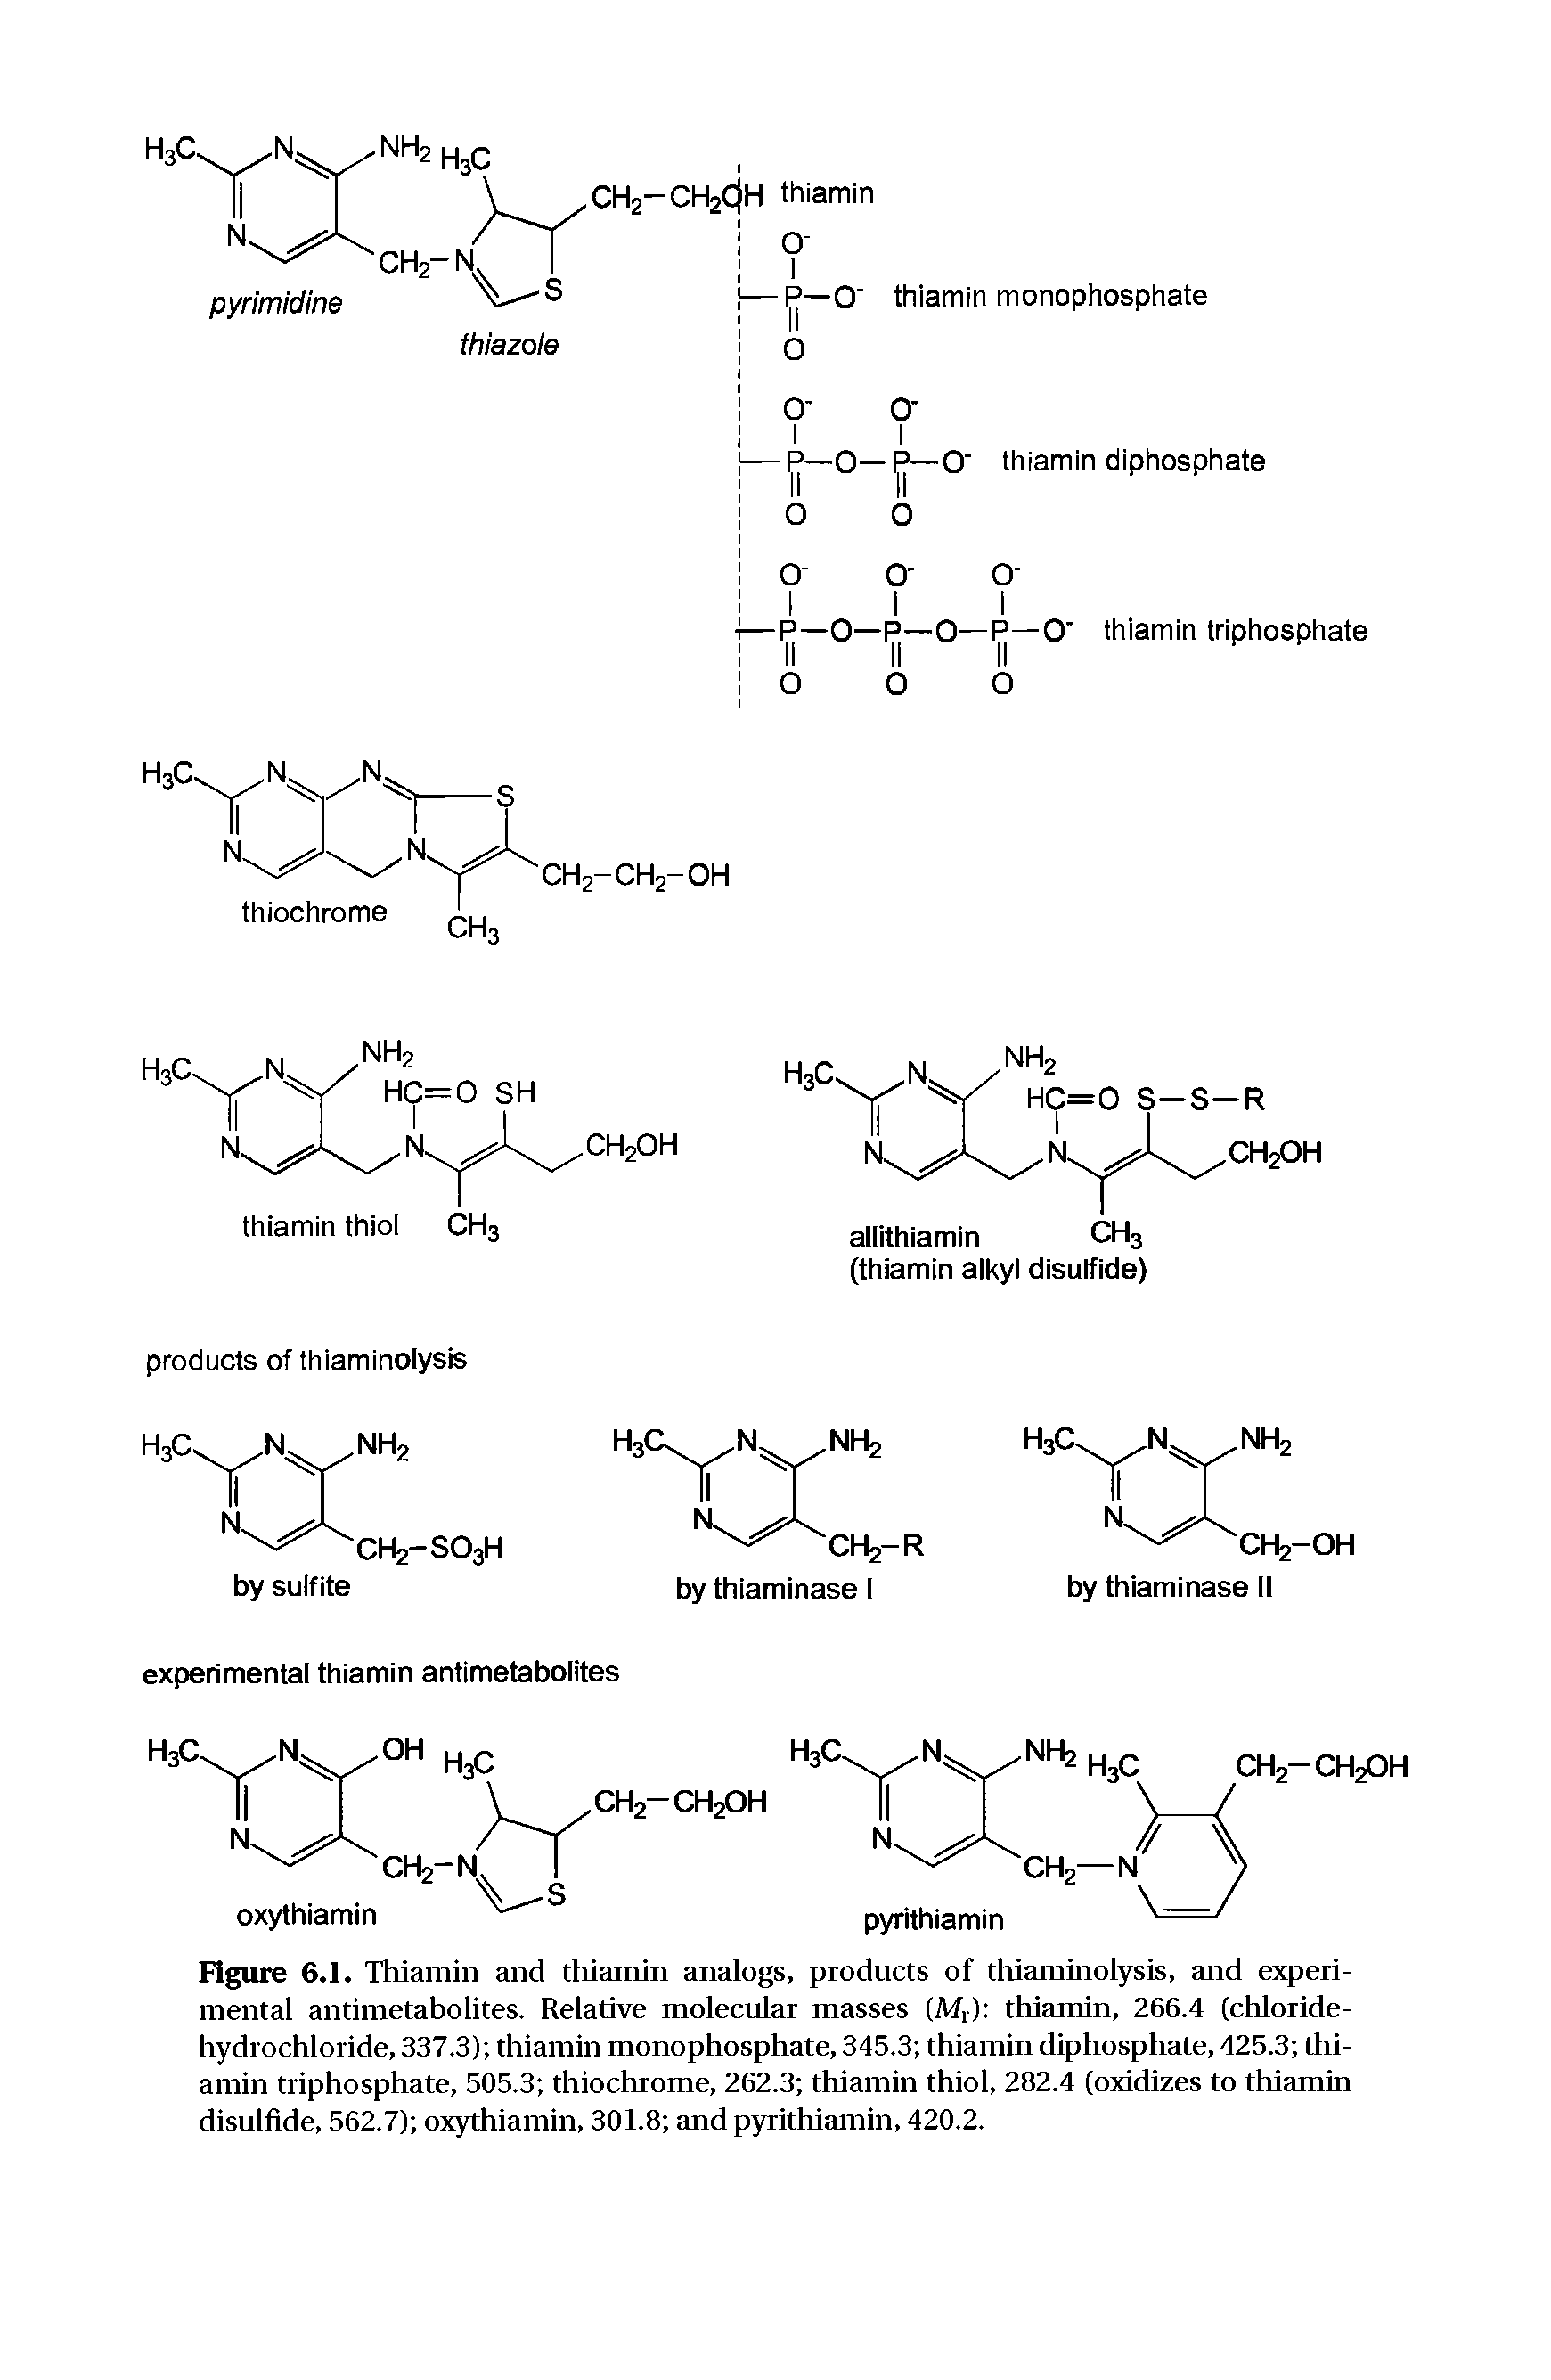 Figure 6.1. Thiamin and thiamin analogs, products of tliiaminolysis, and experimental antimetabolites. Relative molecular masses (M,) thiamin, 266.4 (chloride-hydrochloride, 337.3) thiamin monophosphate, 345.3 thiamin diphosphate, 425.3 thiamin triphosphate, 505.3 thiochrome, 262.3 thiamin thiol, 282.4 (oxidizes to thiamin disulfide, 562.7) oxythiamin, 301.8 and pyrithiamin, 420.2.